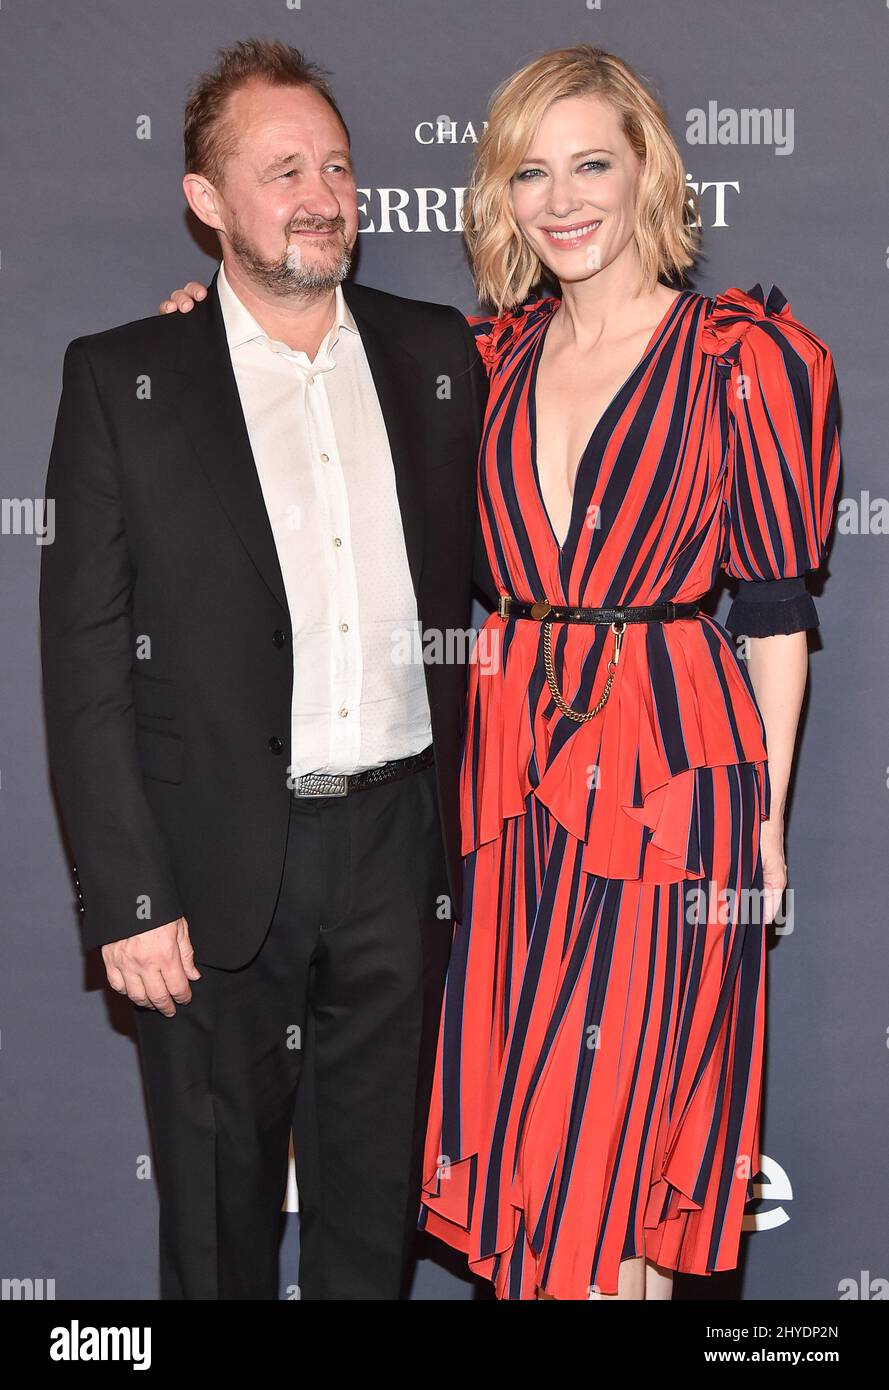 Cate Blanchett e Andrew Upton arrivano per il terzo InStyle Awards annuale, onorando attori, attrici e artisti il cui stile definisce il tappeto rosso, nonché i migliori produttori di immagini del settore che si sono tenuti al Getty Center di Los Angeles Foto Stock